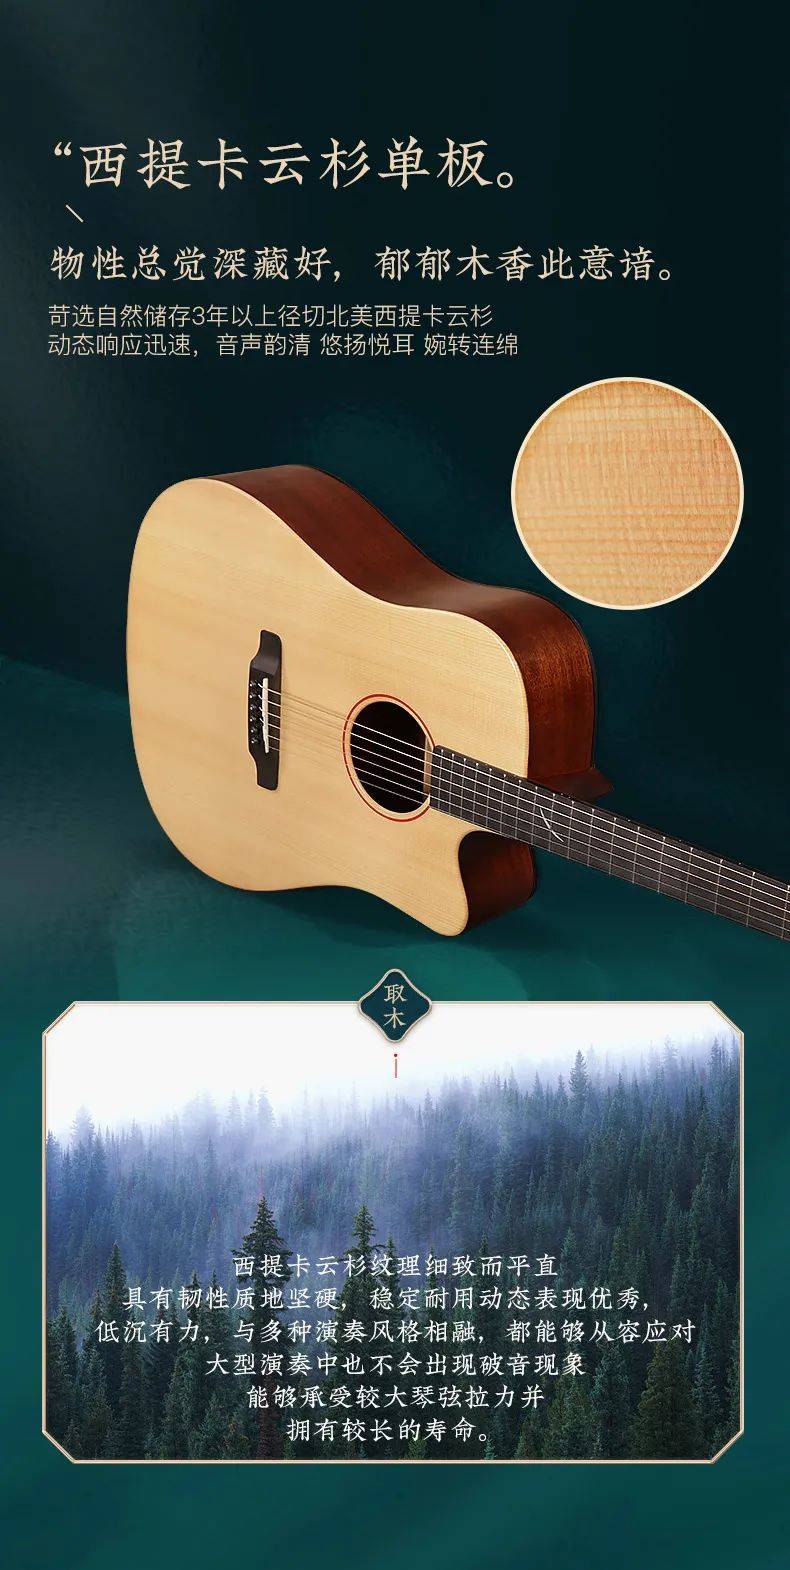 新品上市 | 泰玛tyma吉他2.0新国风系列,全新logo设计语,展东方神韵!